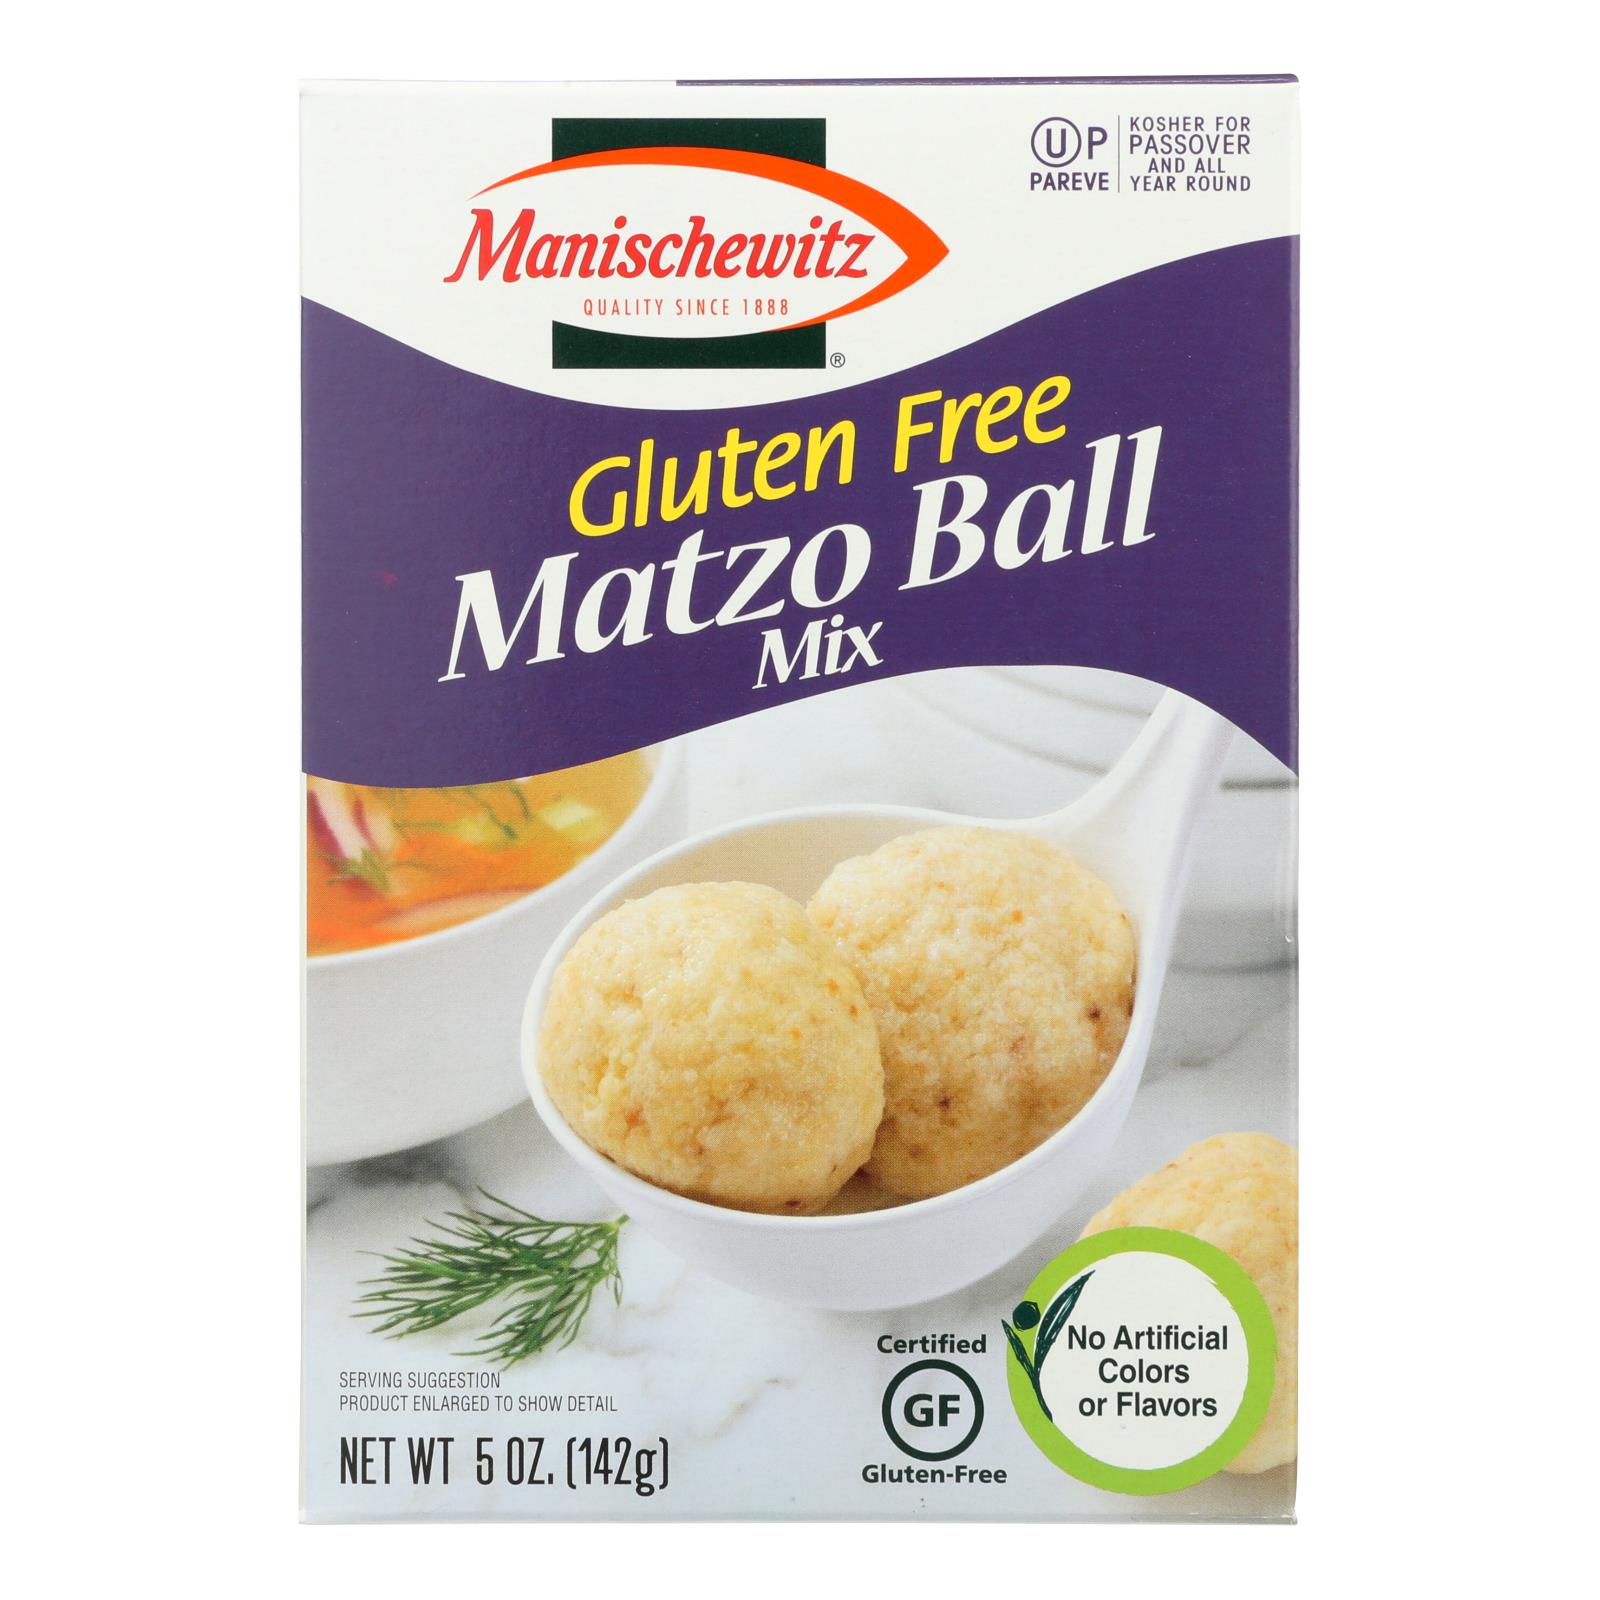 Manischewitz Gluten Free Matzo Ball Mix - 12개 묶음상품 - 5 OZ